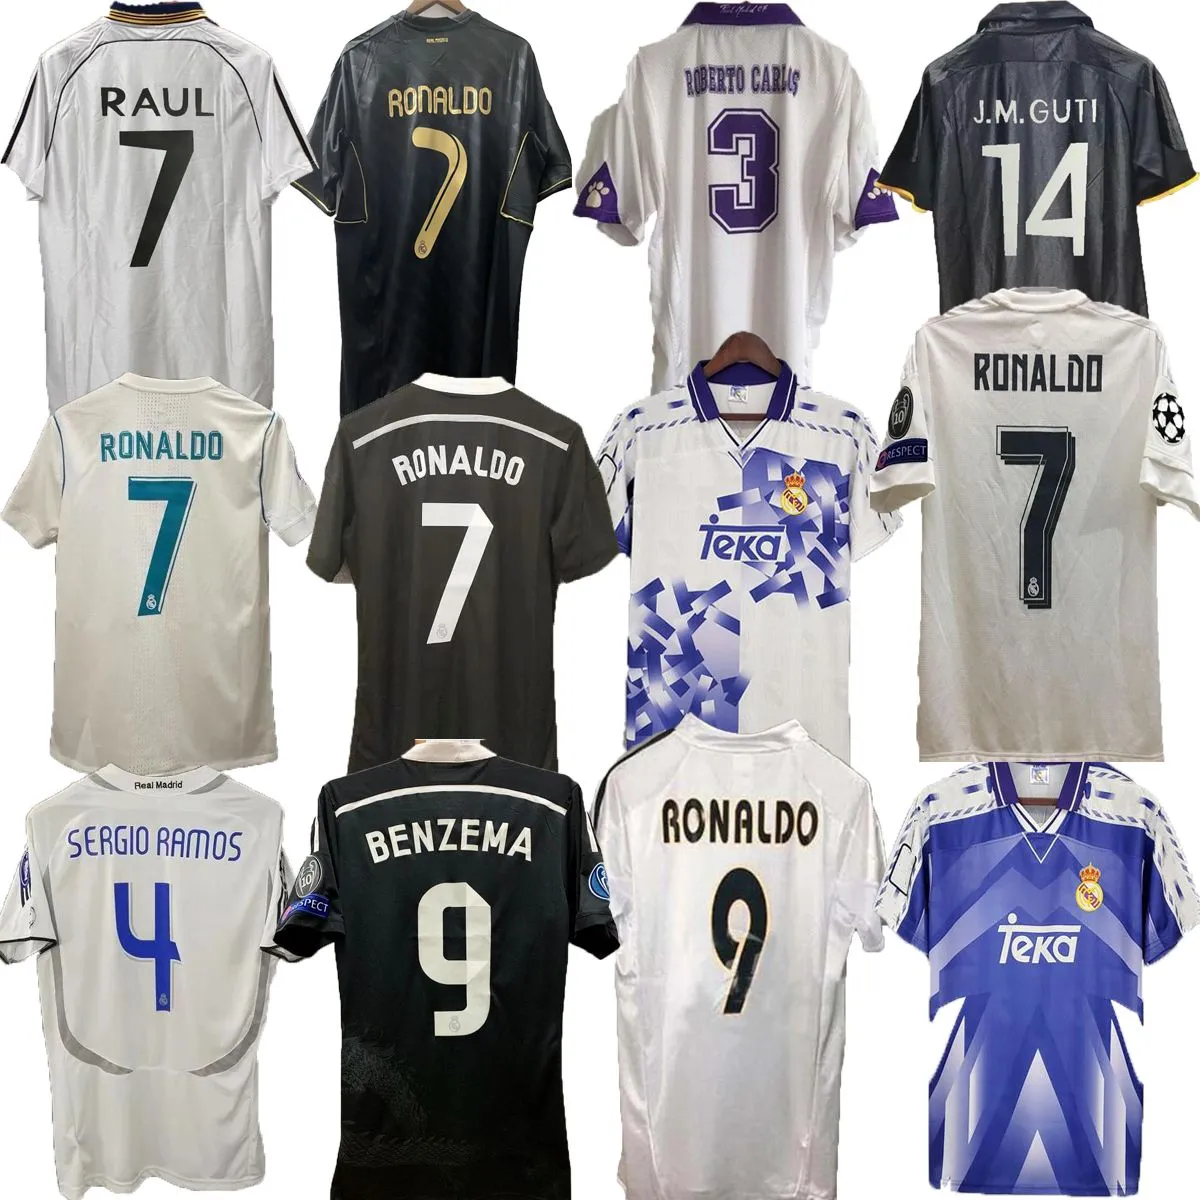 قمصان كرة قدم كلاسيكية من Real Madrids 2000 2001 قميص كرة قدم كلاسيكي camiseta المنزل أبيض R.CARLOS HIERRO REDONDO MORIENTES أعلى جودة S-2XL